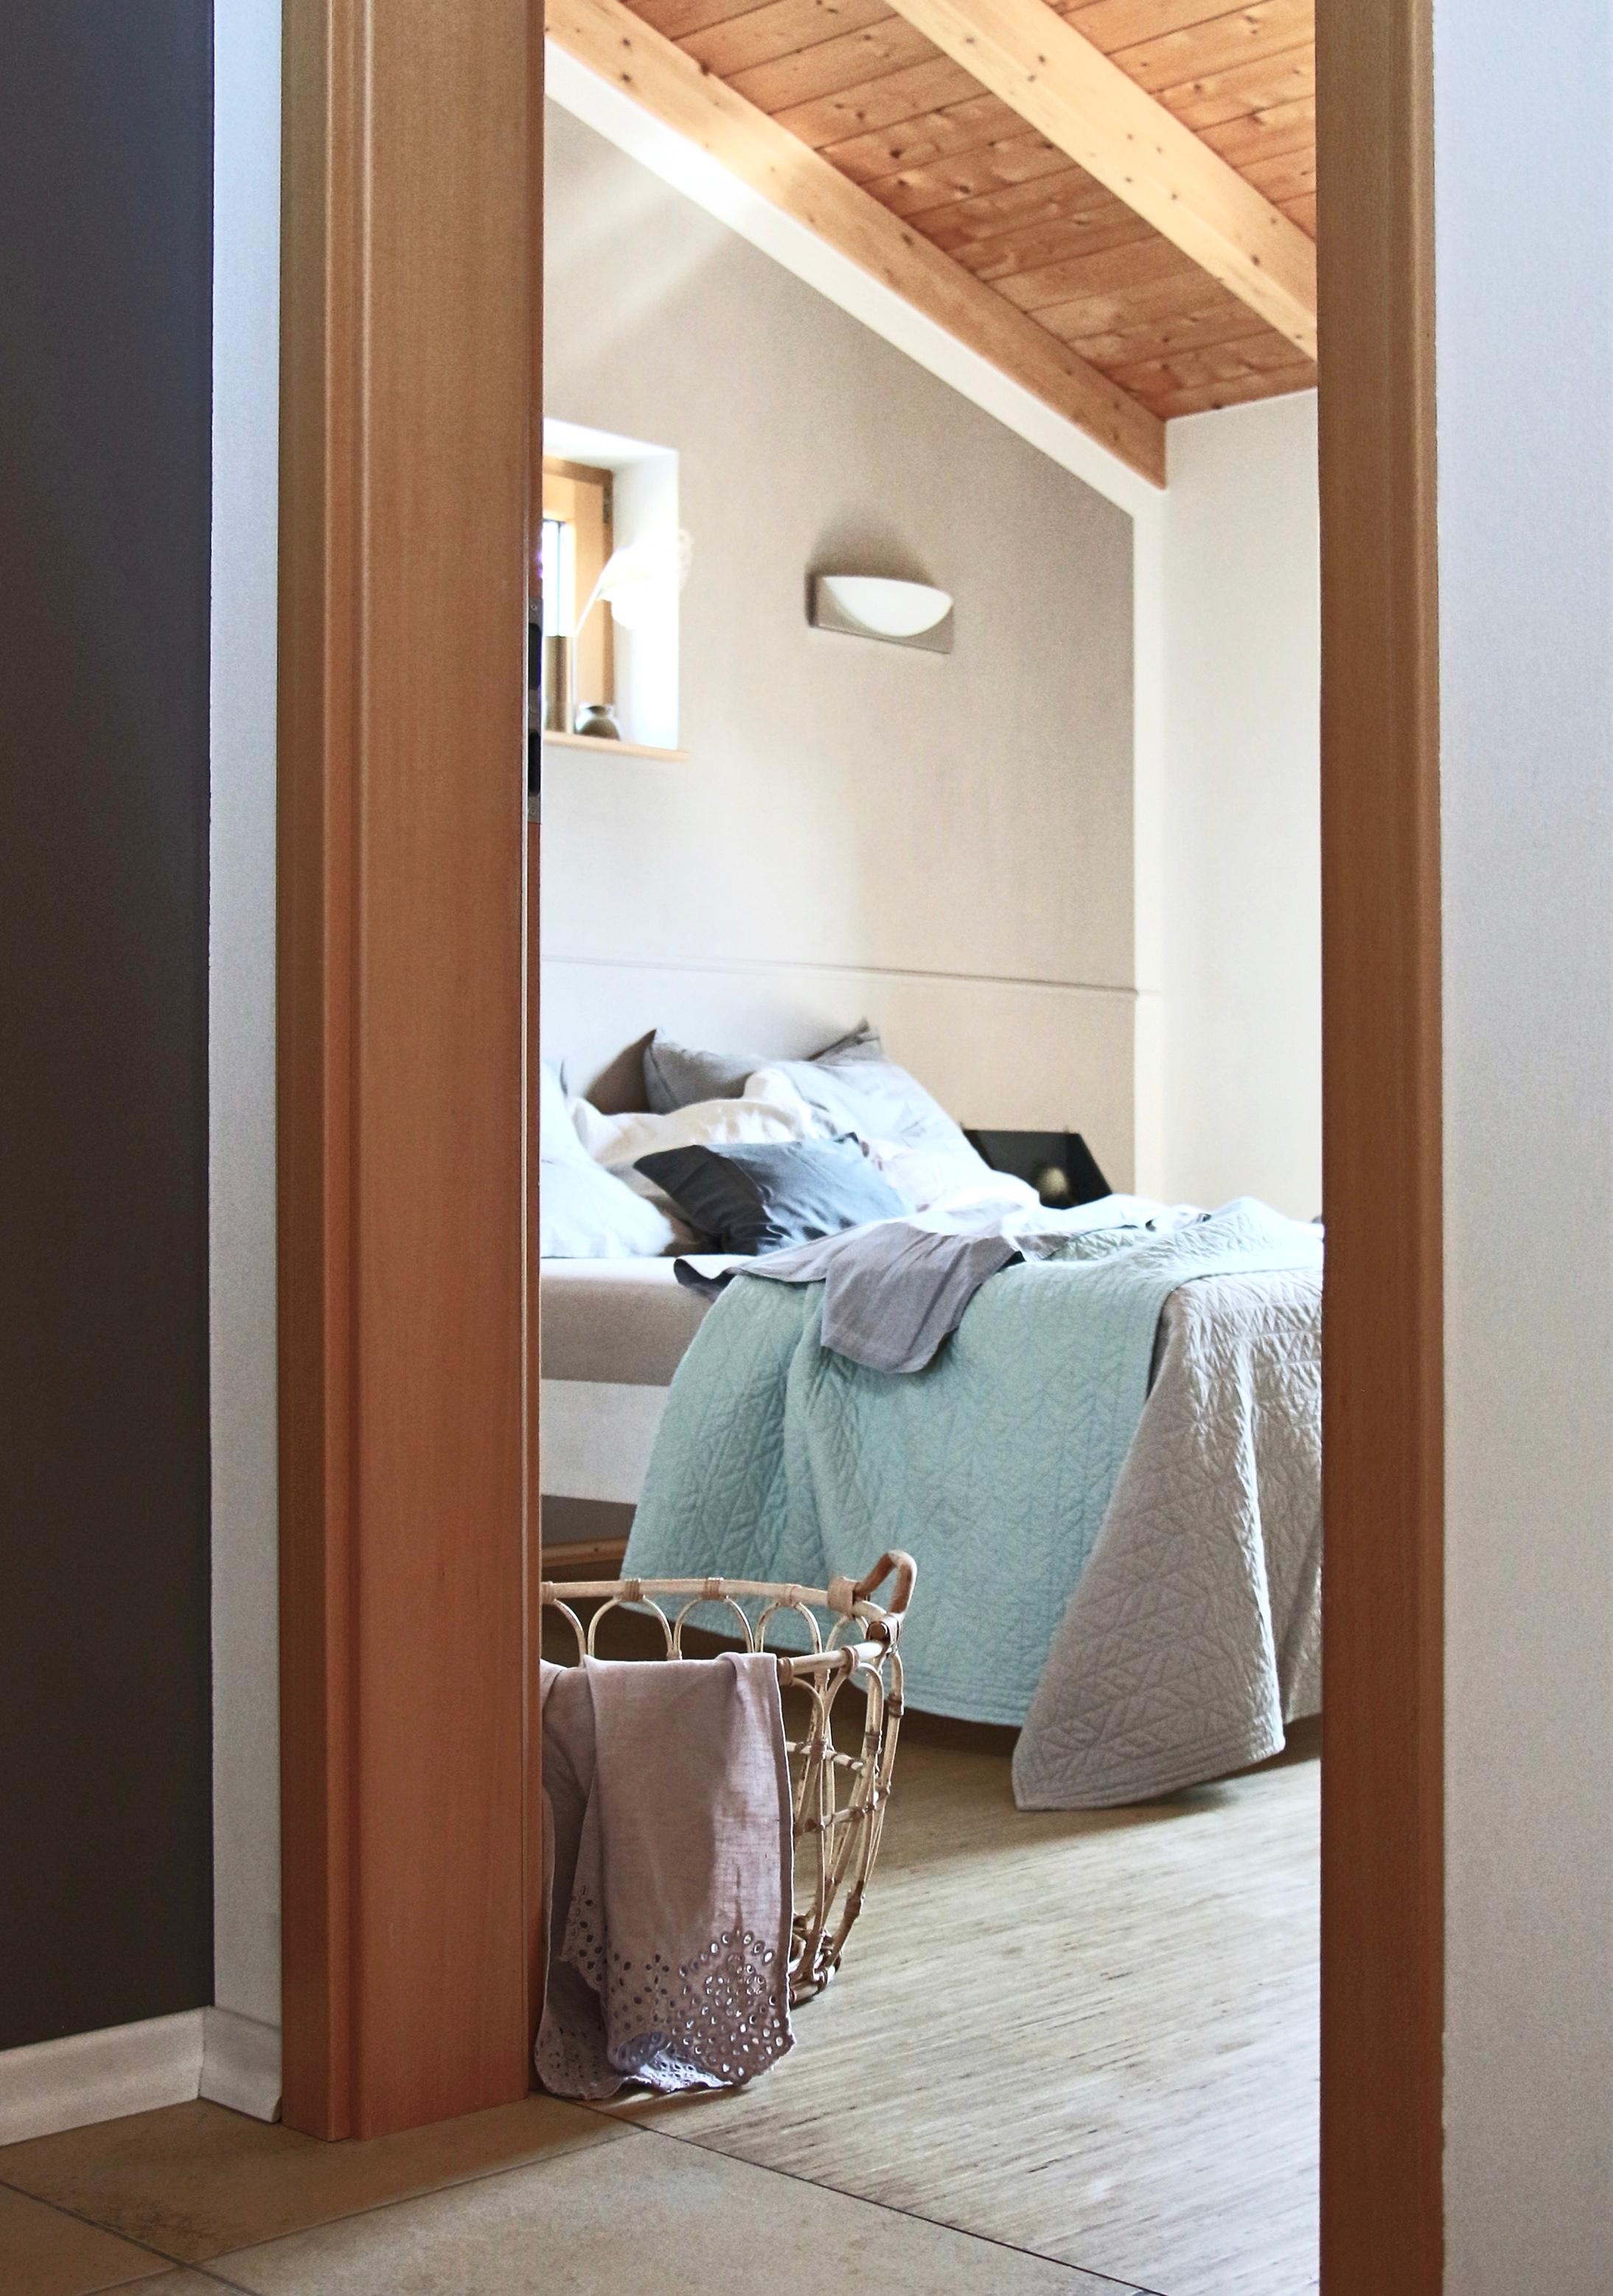 #interior #living #bett #schlafzimmer #holzhaus #summerstyle #natural #farbe #schönerwohnen #beige #mint